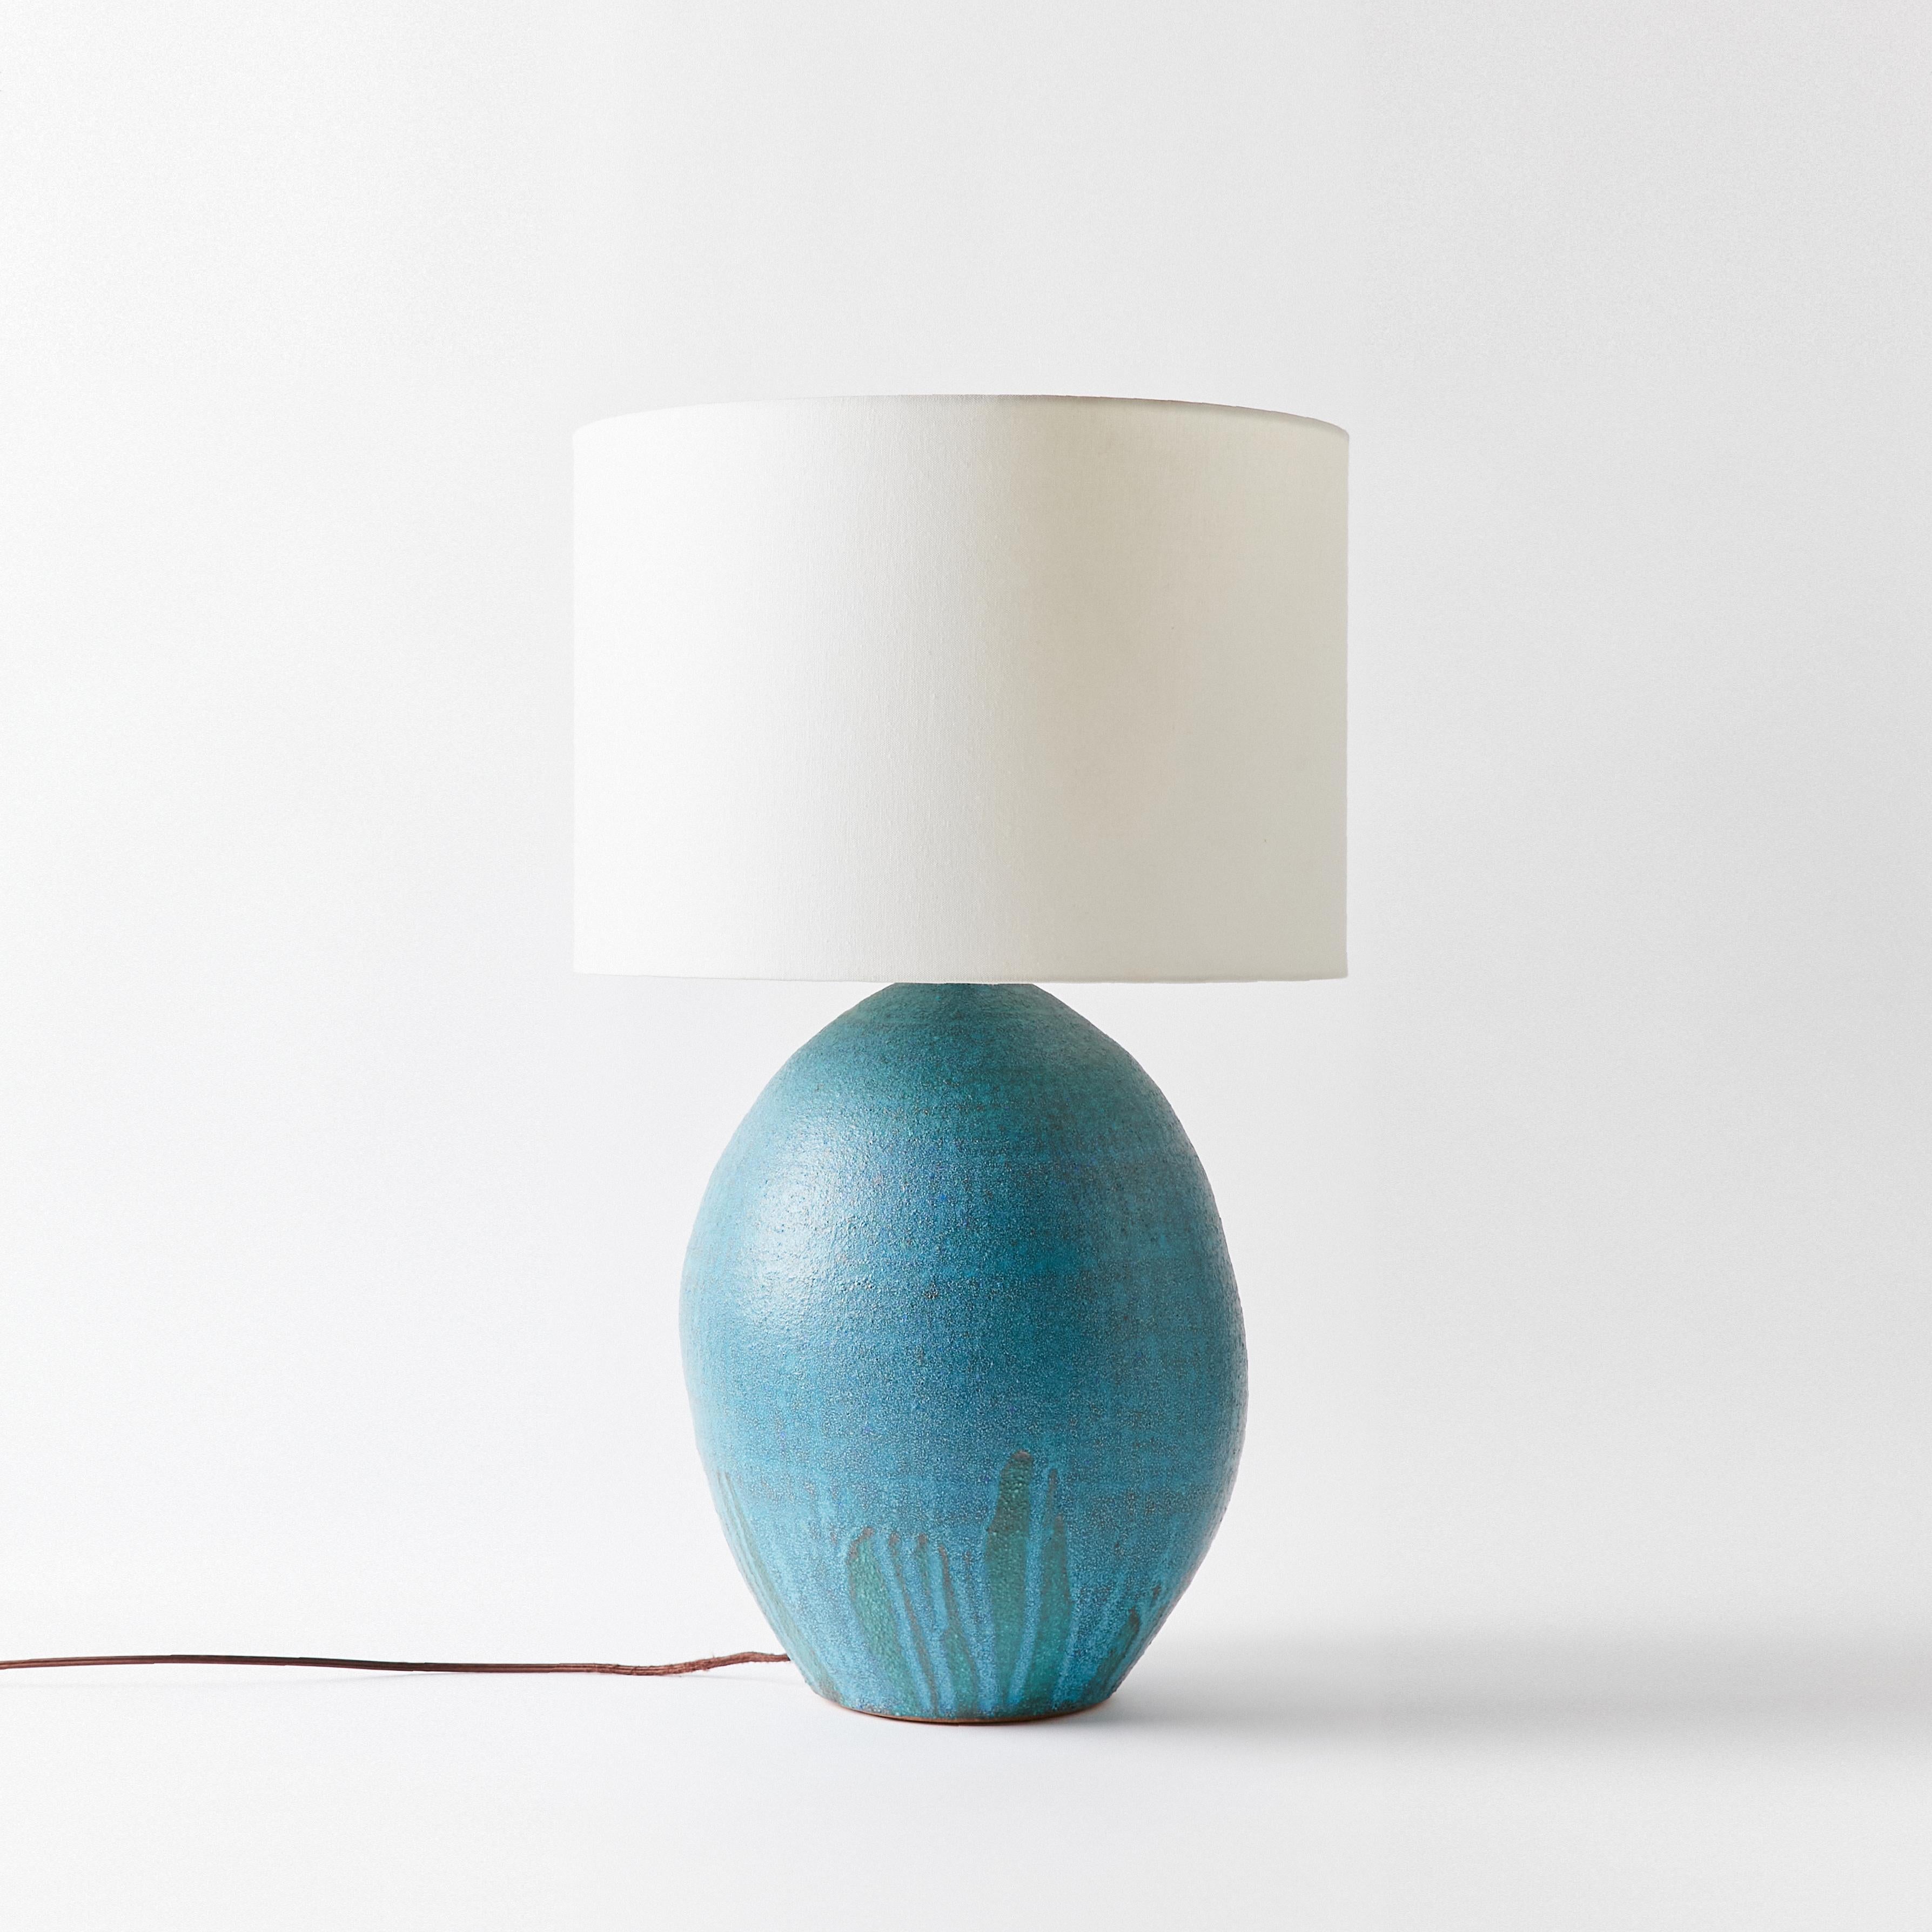 Ceramic cyan blue ceramic lamp by Victoria Morris.